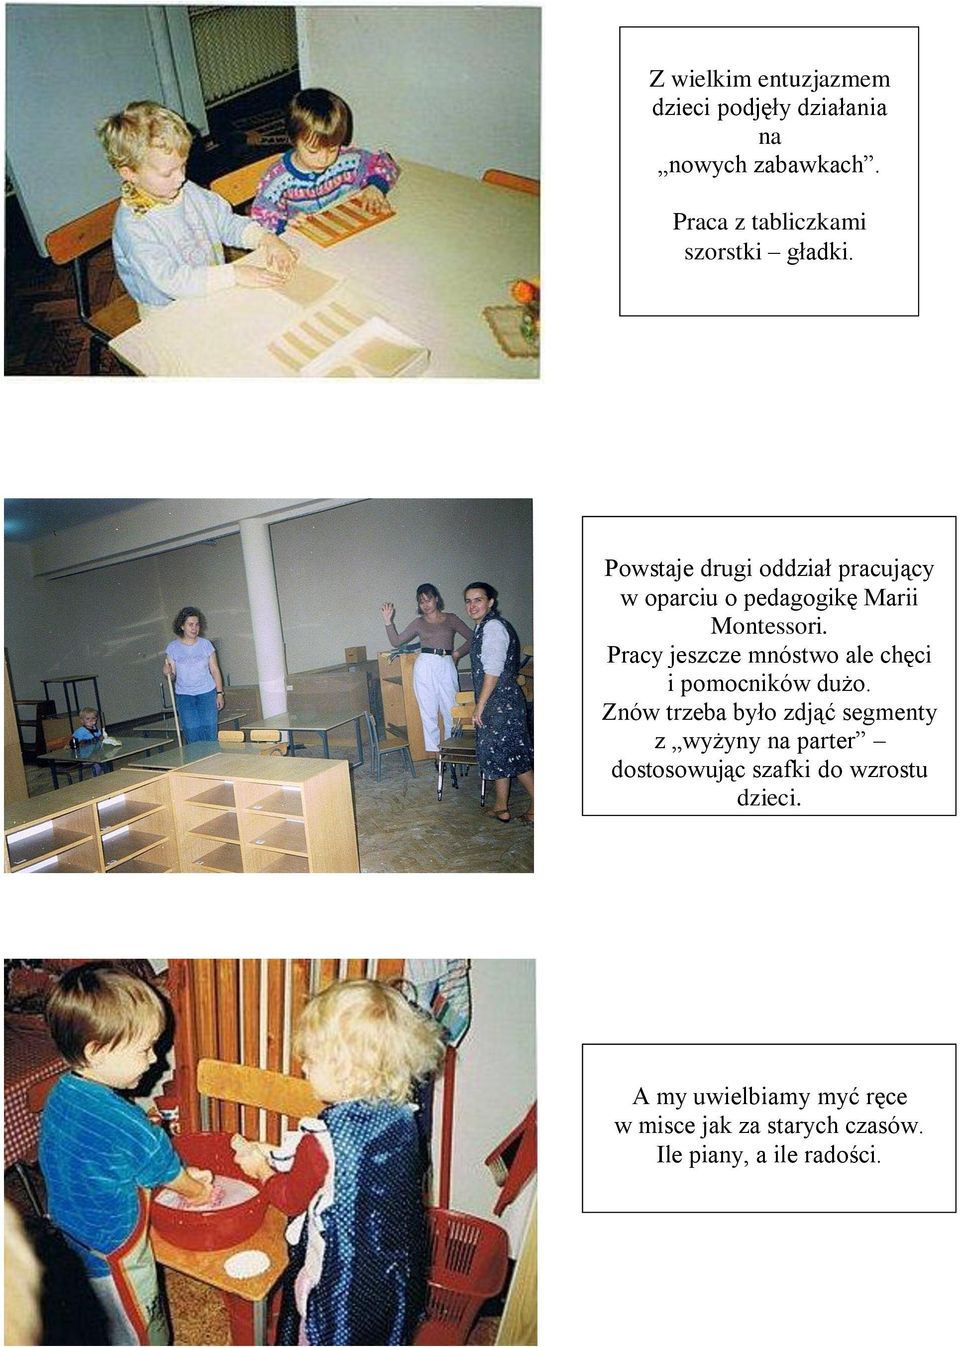 Powstaje drugi oddział pracujący w oparciu o pedagogikę Marii Montessori.